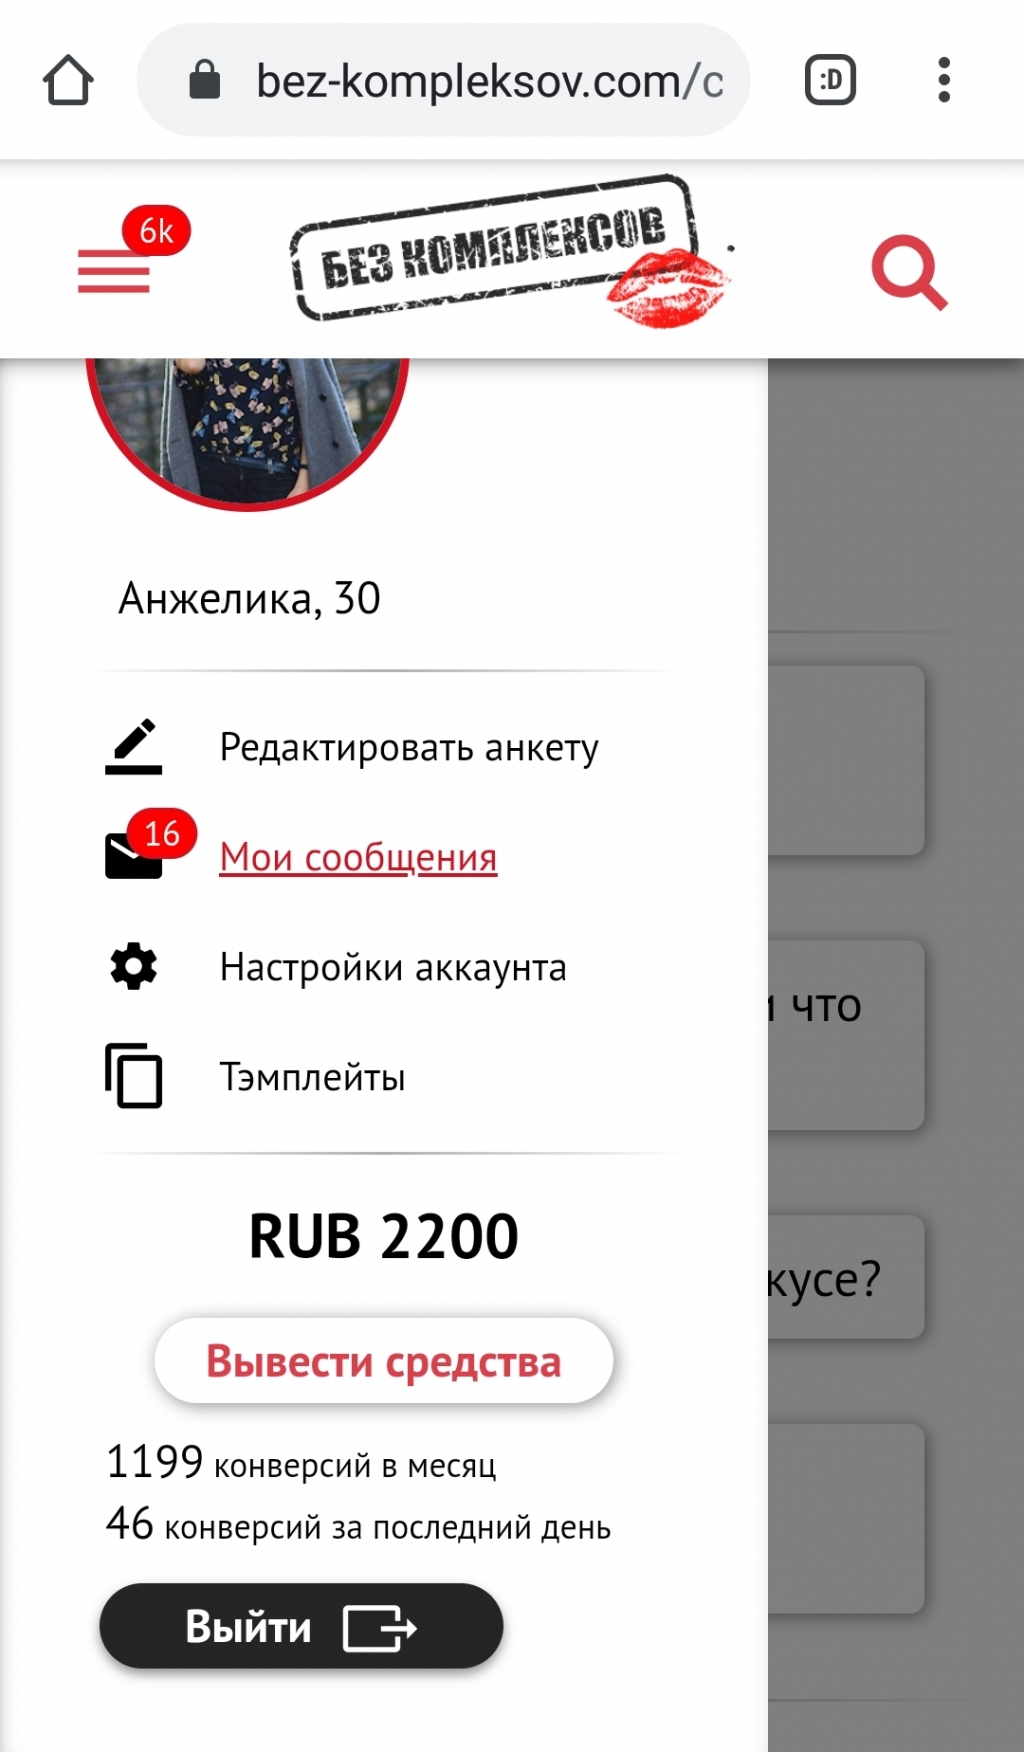 Сайт знакомств прокопьевск бесплатно без регистрации с фото и телефоном